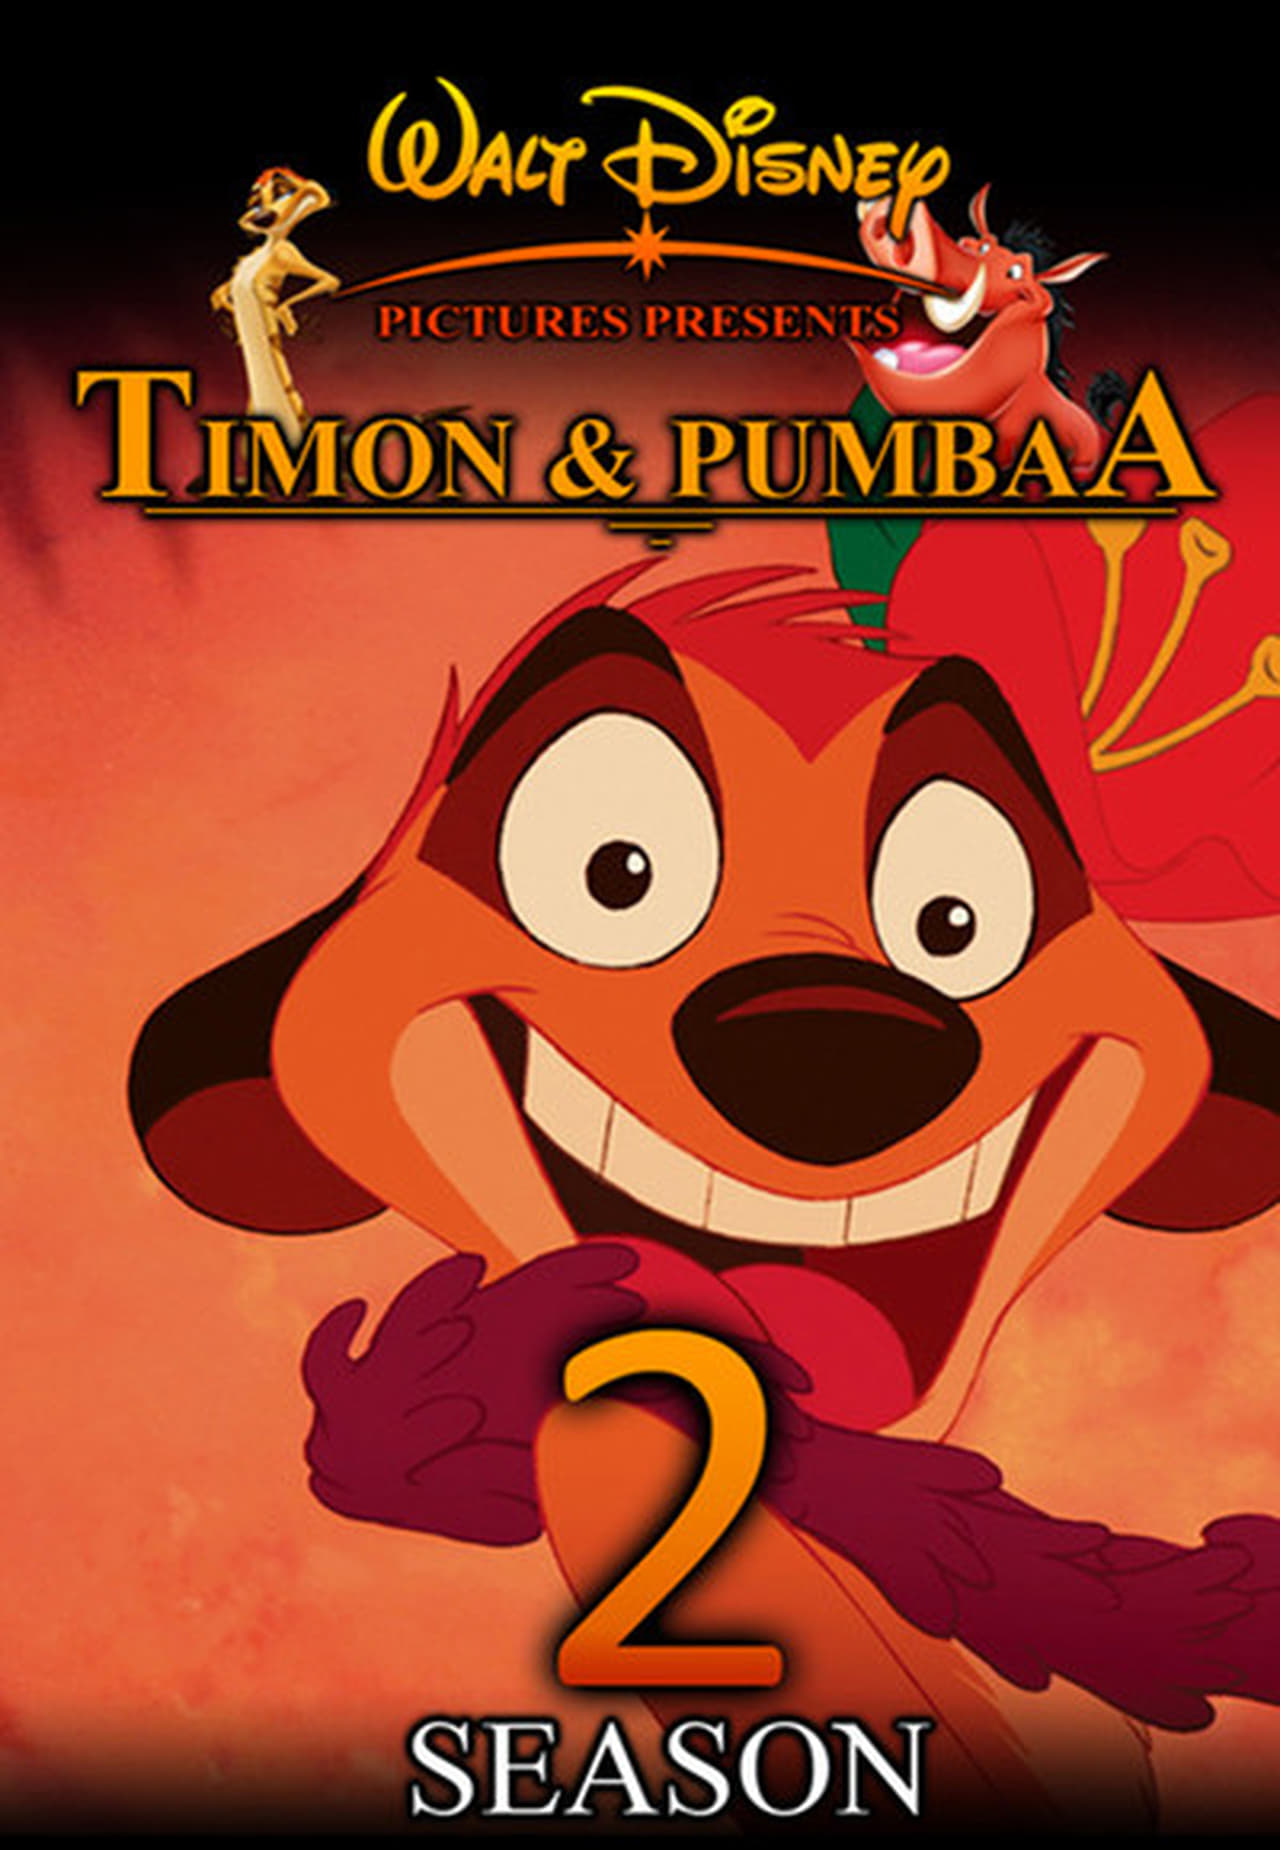 Timon & Pumbaa Season 2